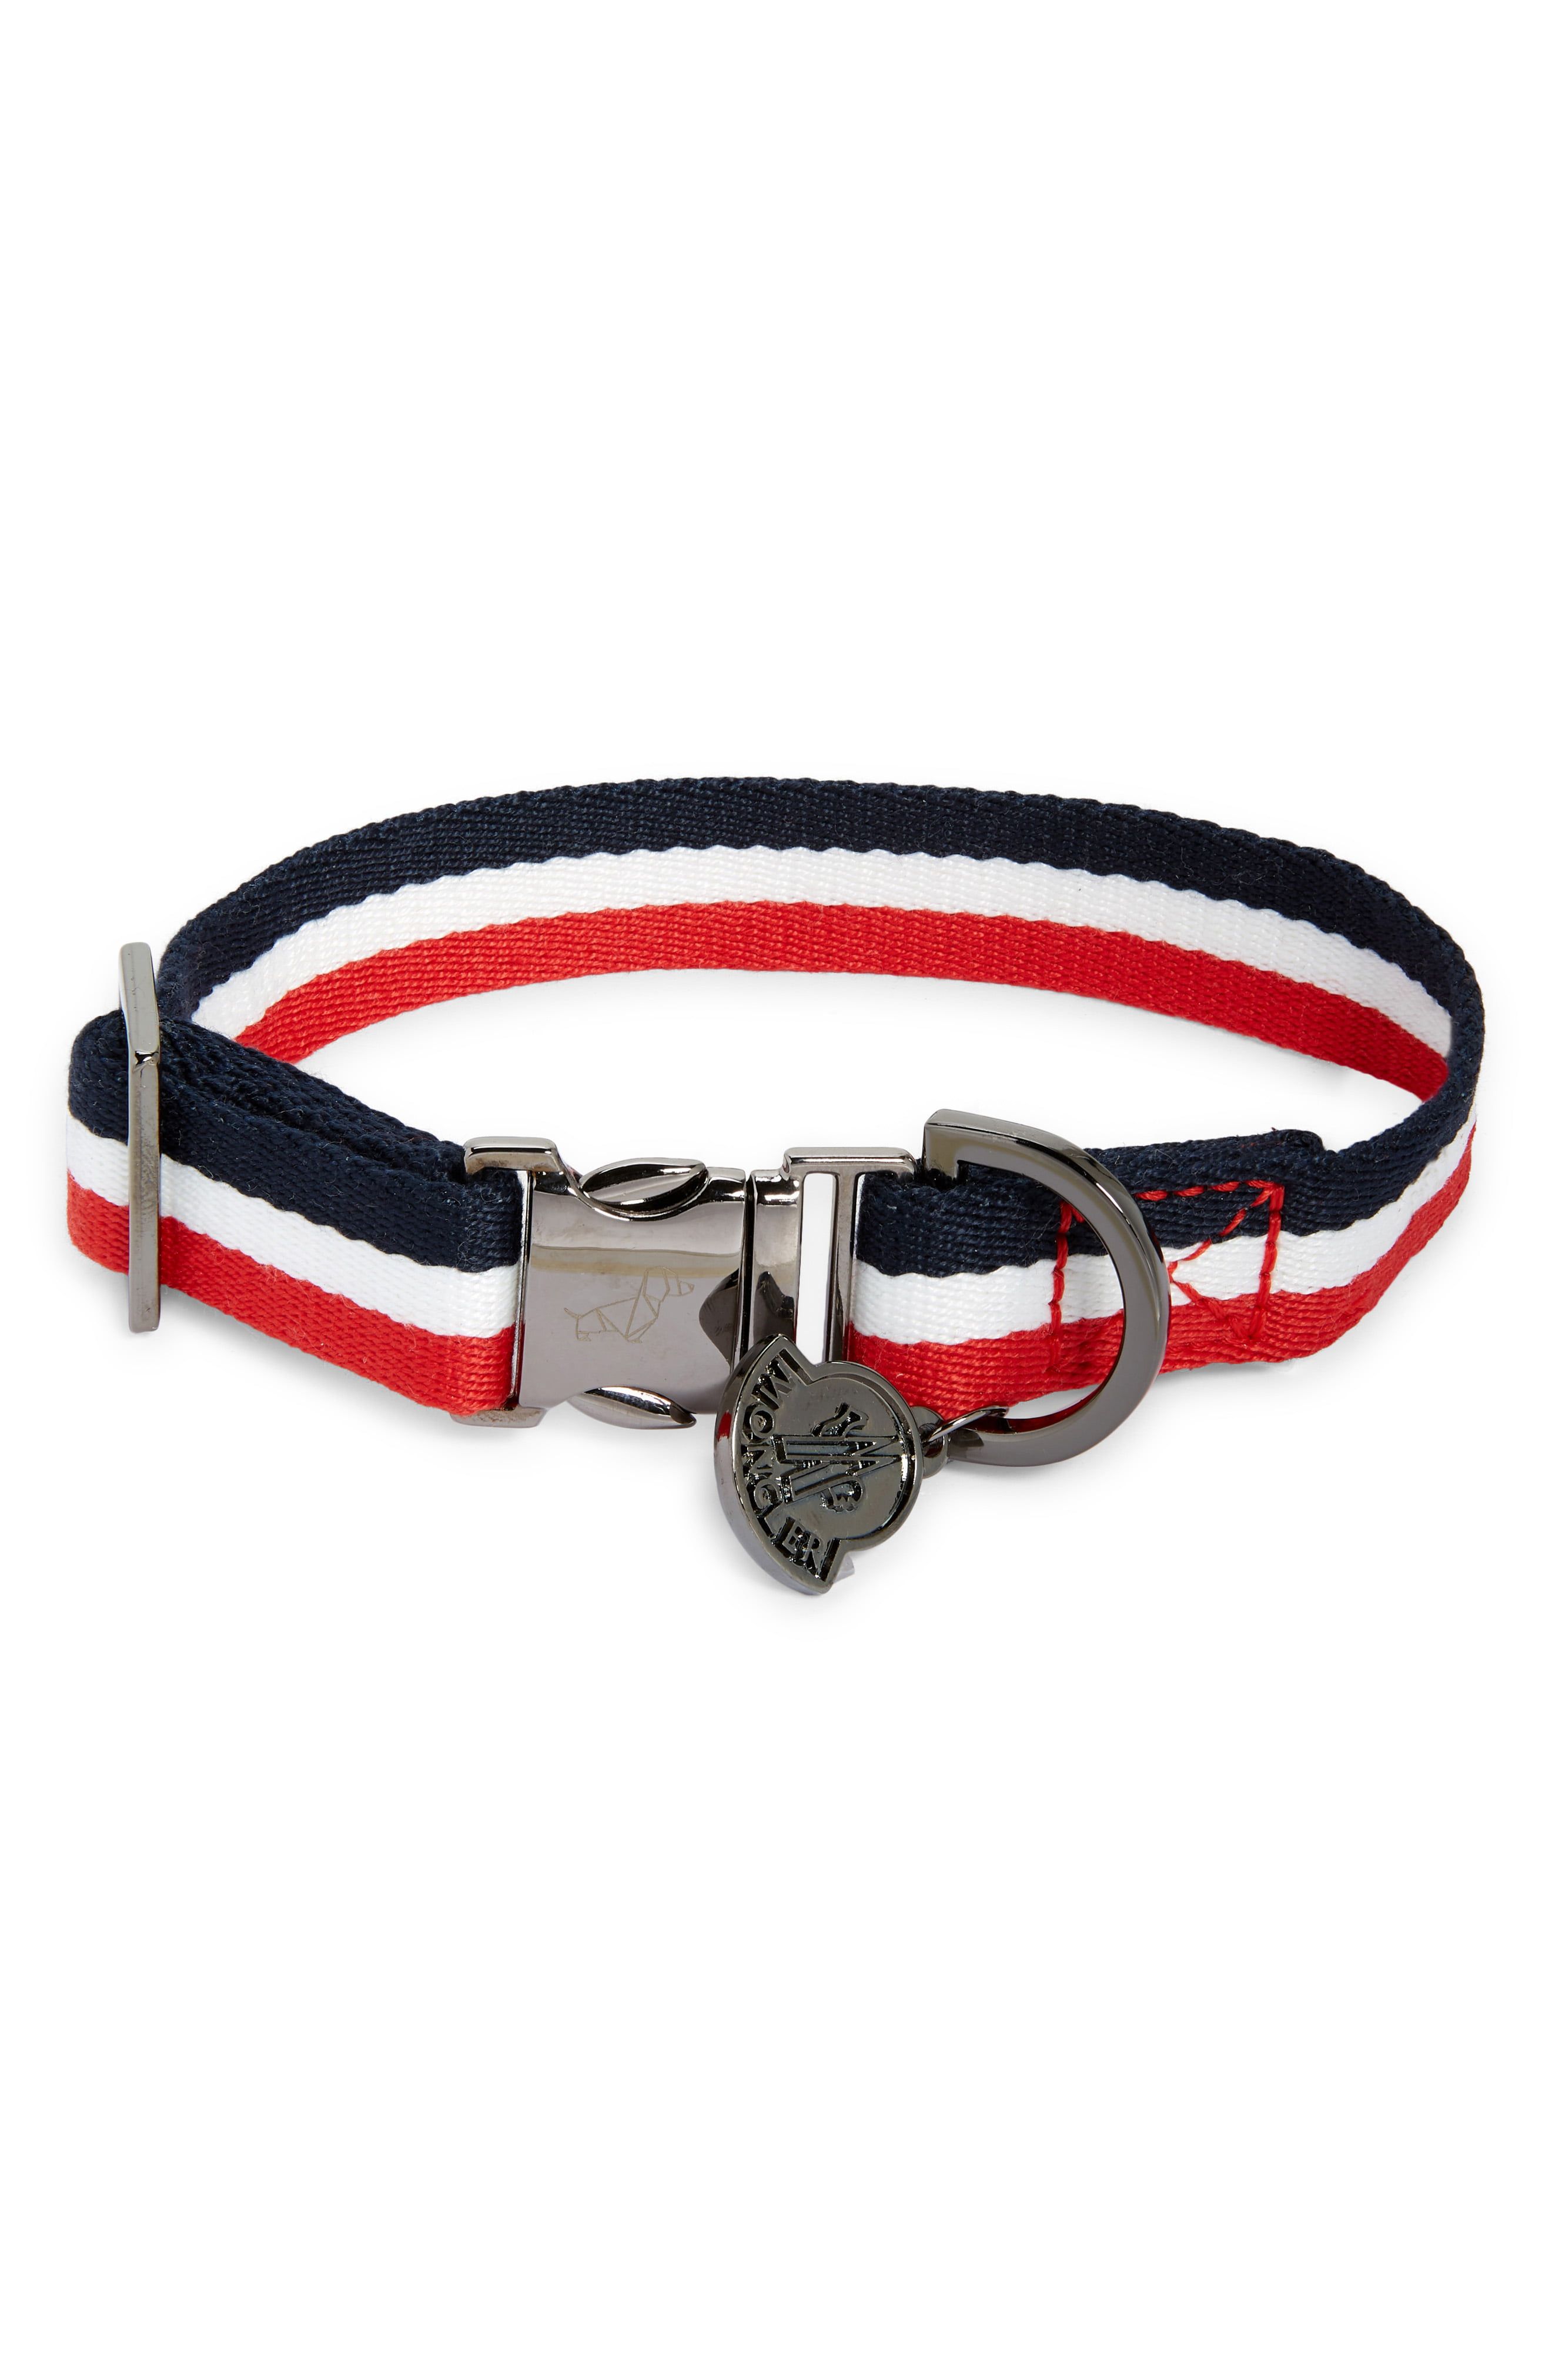 Teal Dog Collar Tealin Cute Dog Collar Archer Dog Collar Adjustable Dog Collar Matching Dog Collar Dog Gift Arrows Padded Dog Collar